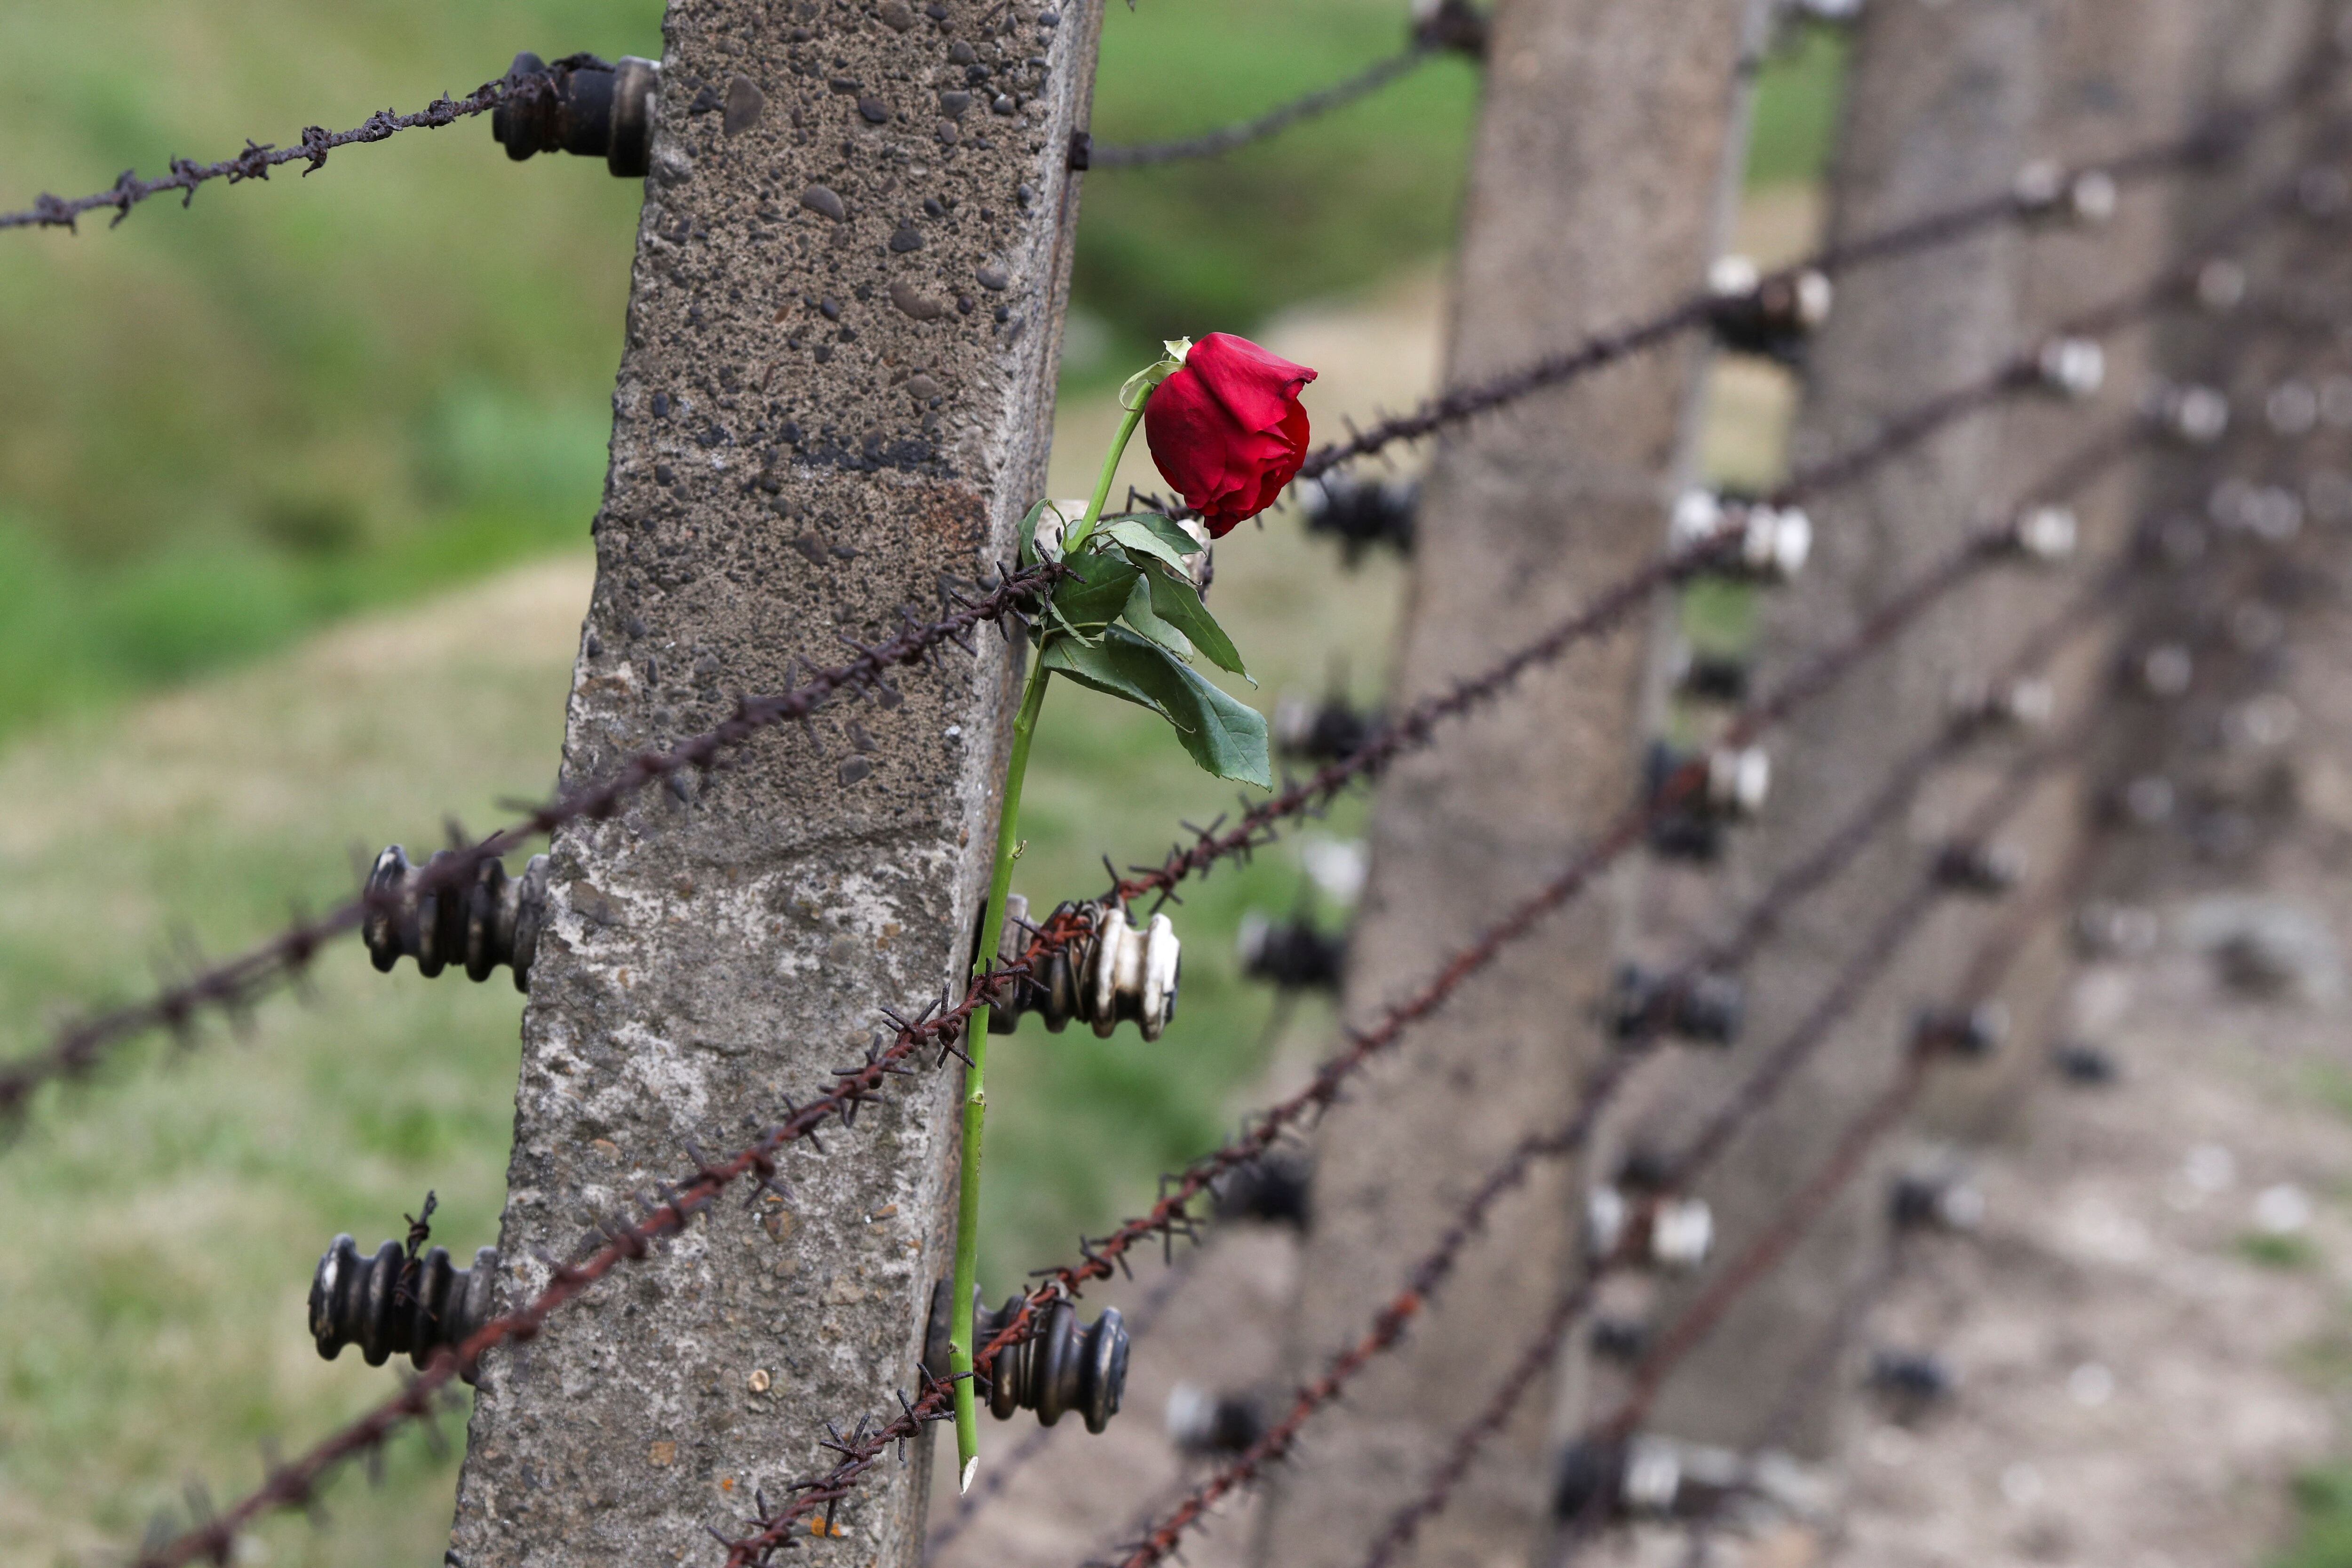 Campo de concentración de Auschwitz (REUTERS/Kacper Pempel)